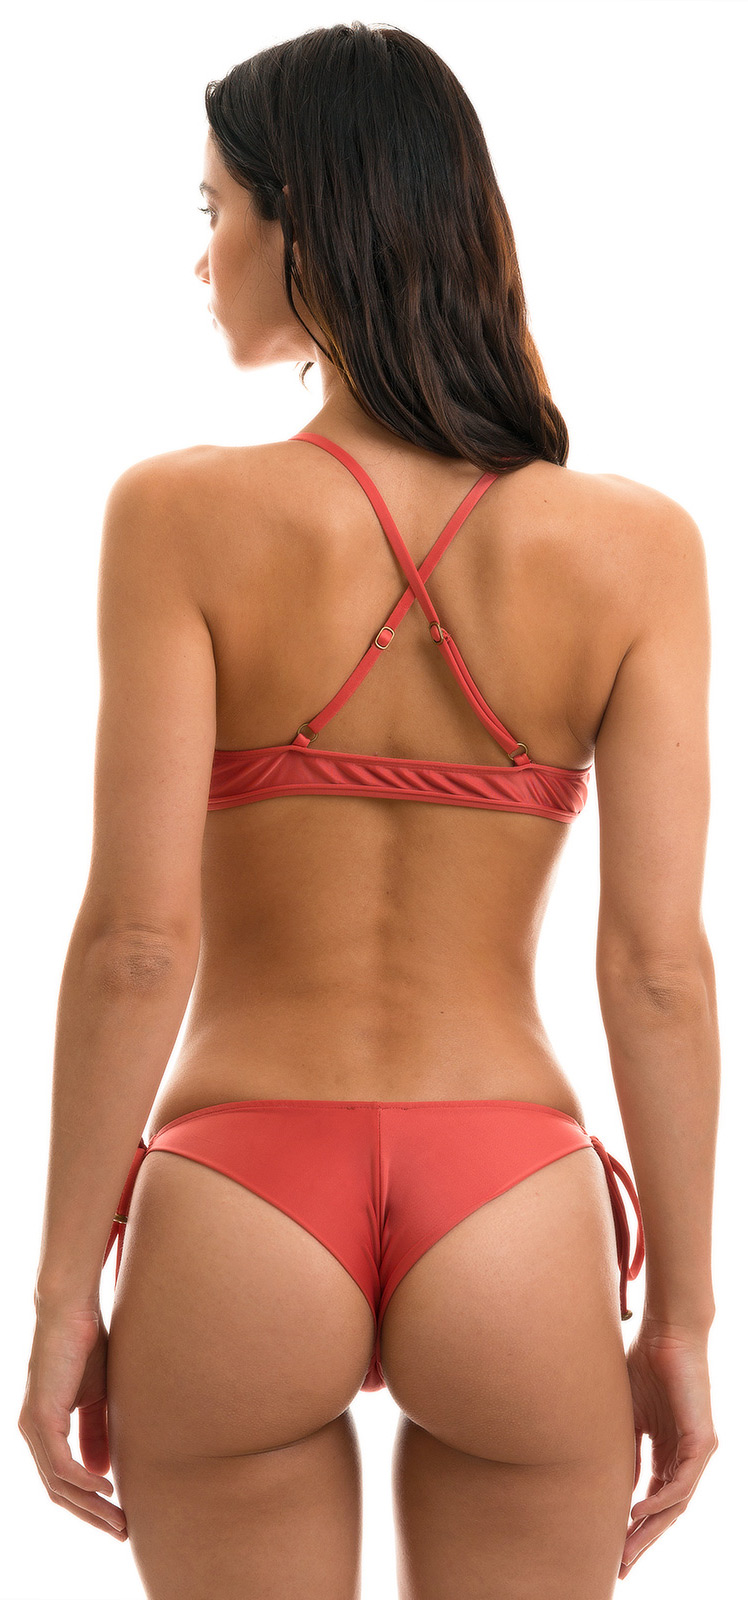 Bewust Krachtig professioneel Brique Rode Driehoekige Bikini Met Gekruiste Achterkant En Strik Voorkant -  Madras Tri Arg - Rio de Sol